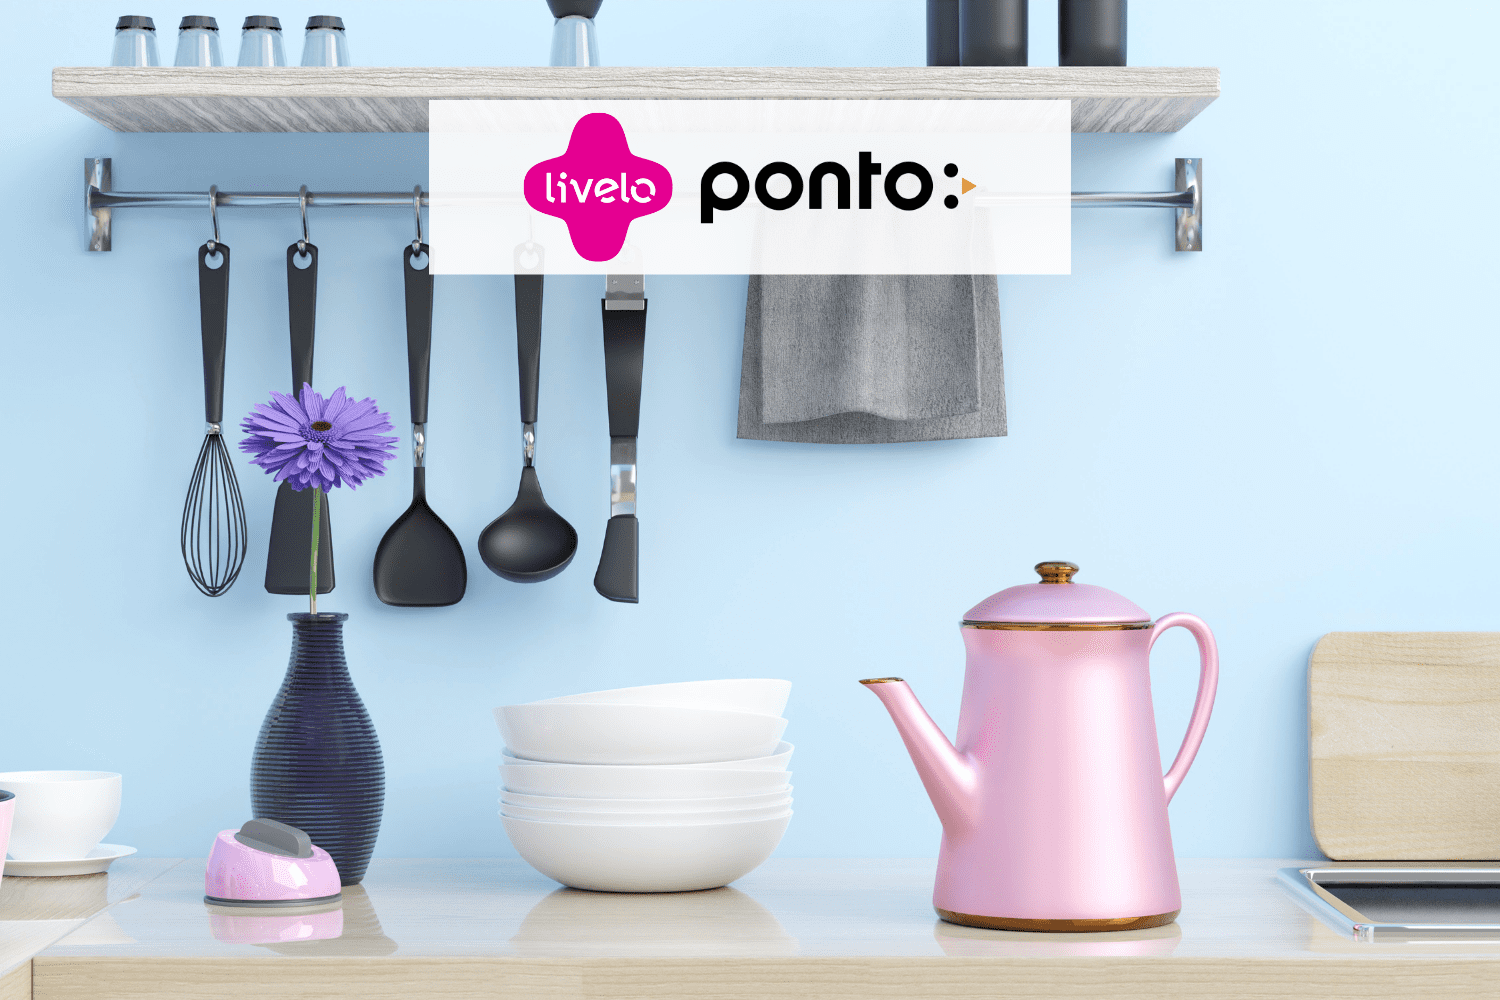 utensílios domésticos coloridos com logo Livelo e Ponto 8 pontos Livelo